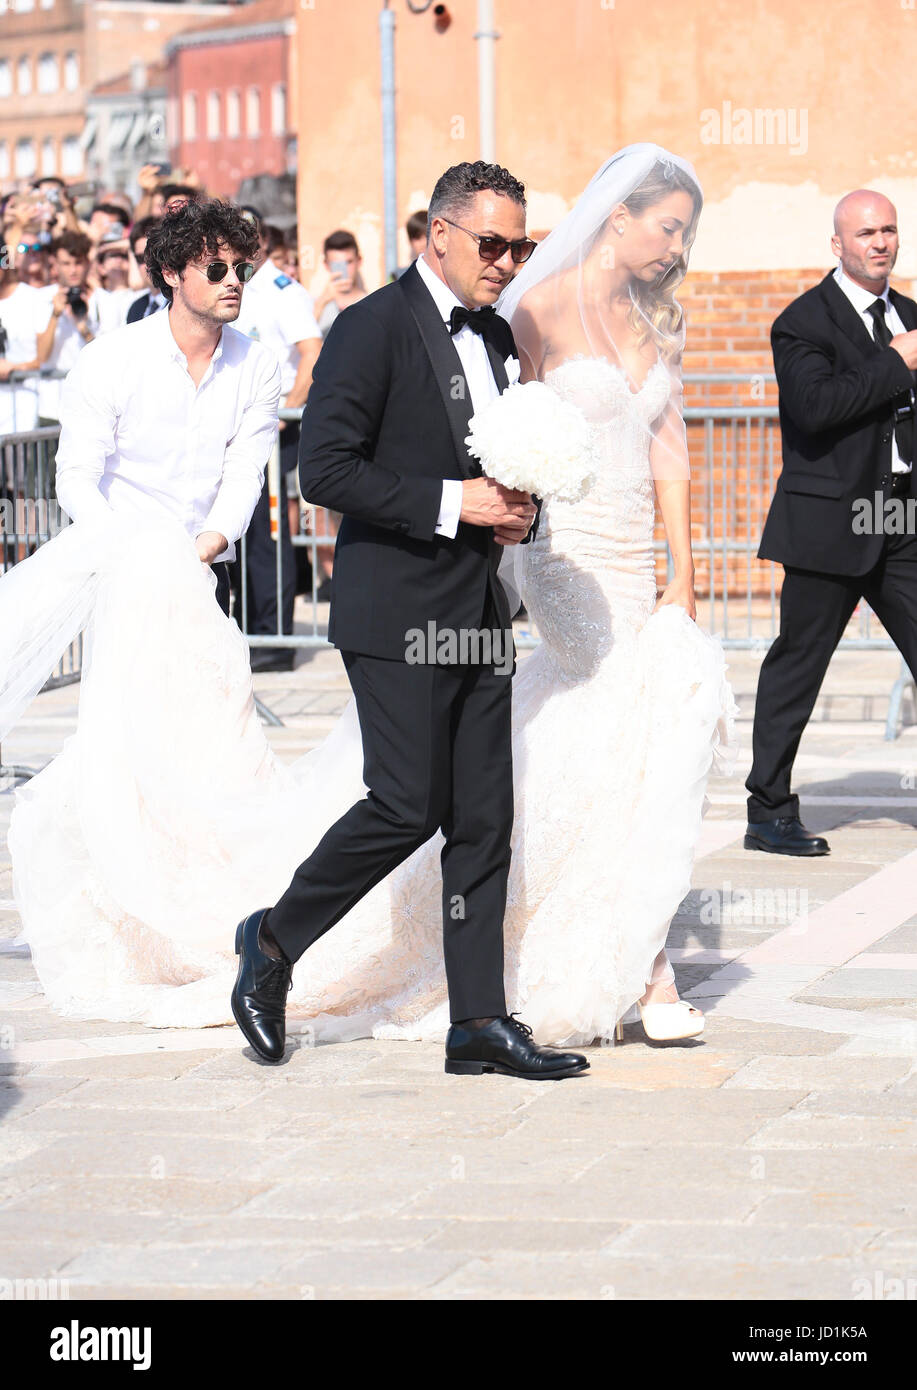 Alice Campello arriva presso la Chiesa del Redentore a Venezia per le nozze  con Alvaro appartamento Morata. Abito: Celebrity sposa Foto stock - Alamy